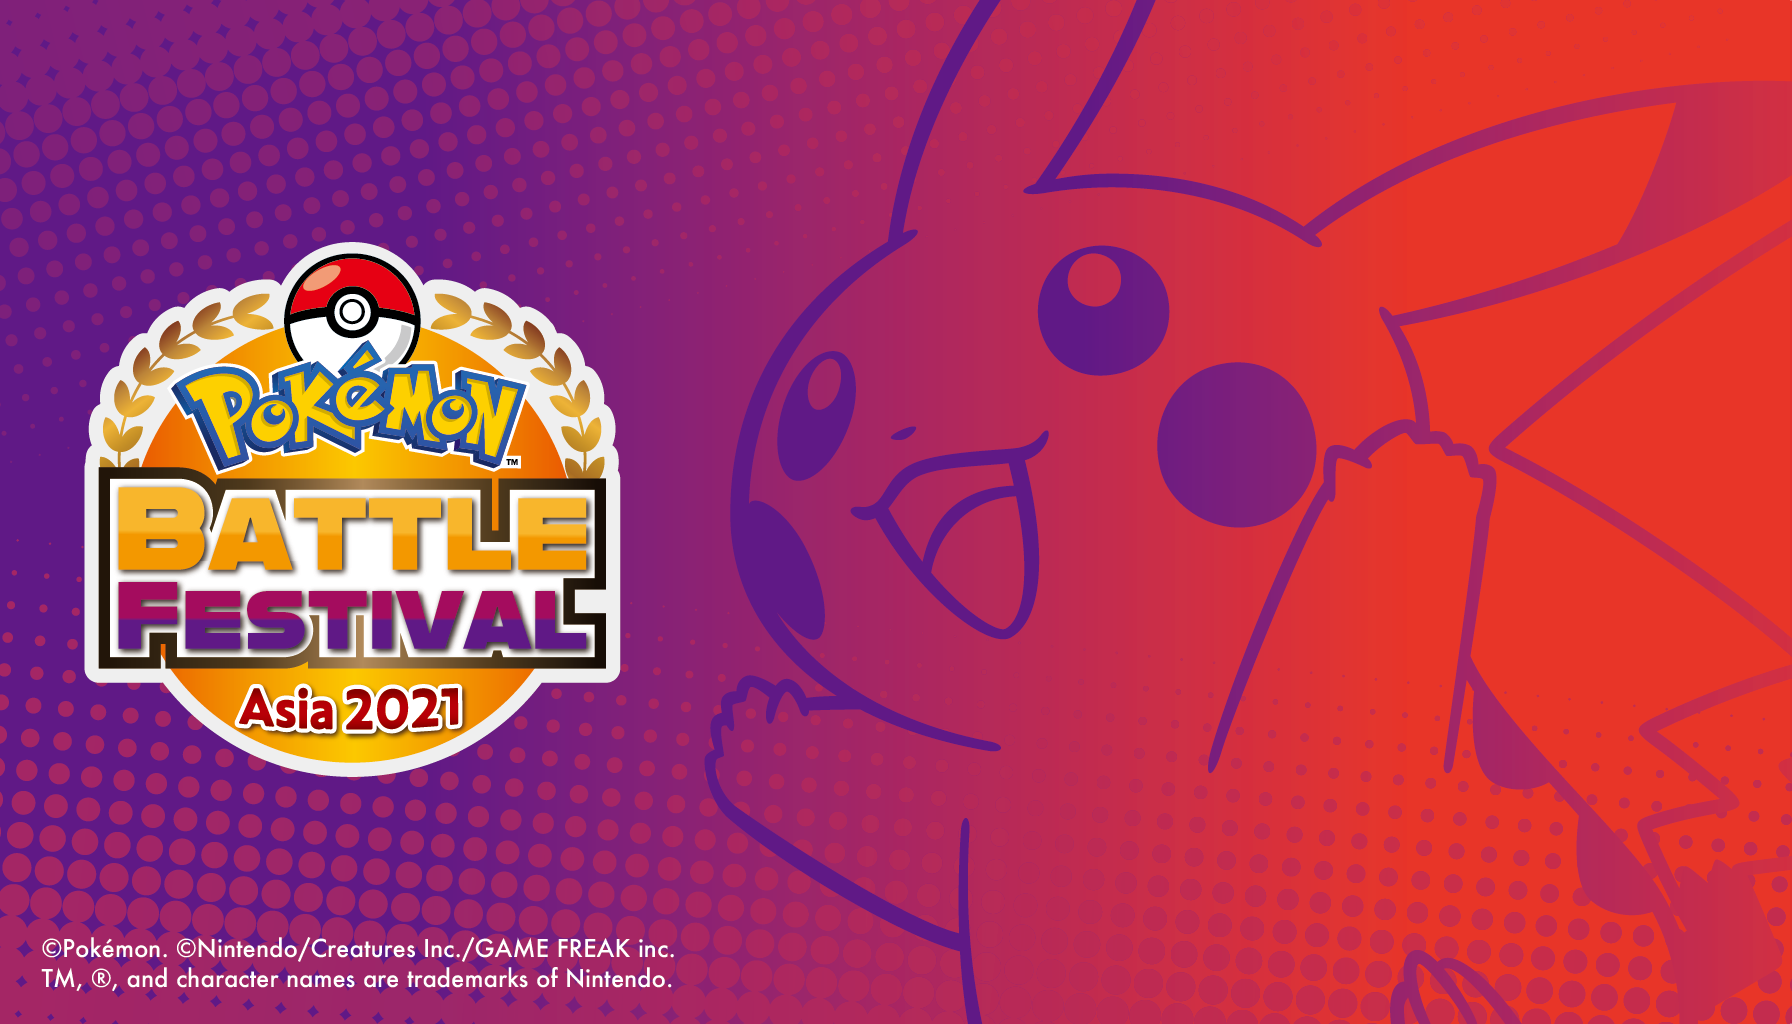 เทศกาลแห่งการแข่งขัน Pokémon ครั้งแรกกับ Pokémon Battle Festival Asia พร้อมความตื่นตาตื่นใจให้กับแฟน ๆ Pokémon หลากหลายภูมิภาคในเดือนพฤศจิกายนนี้